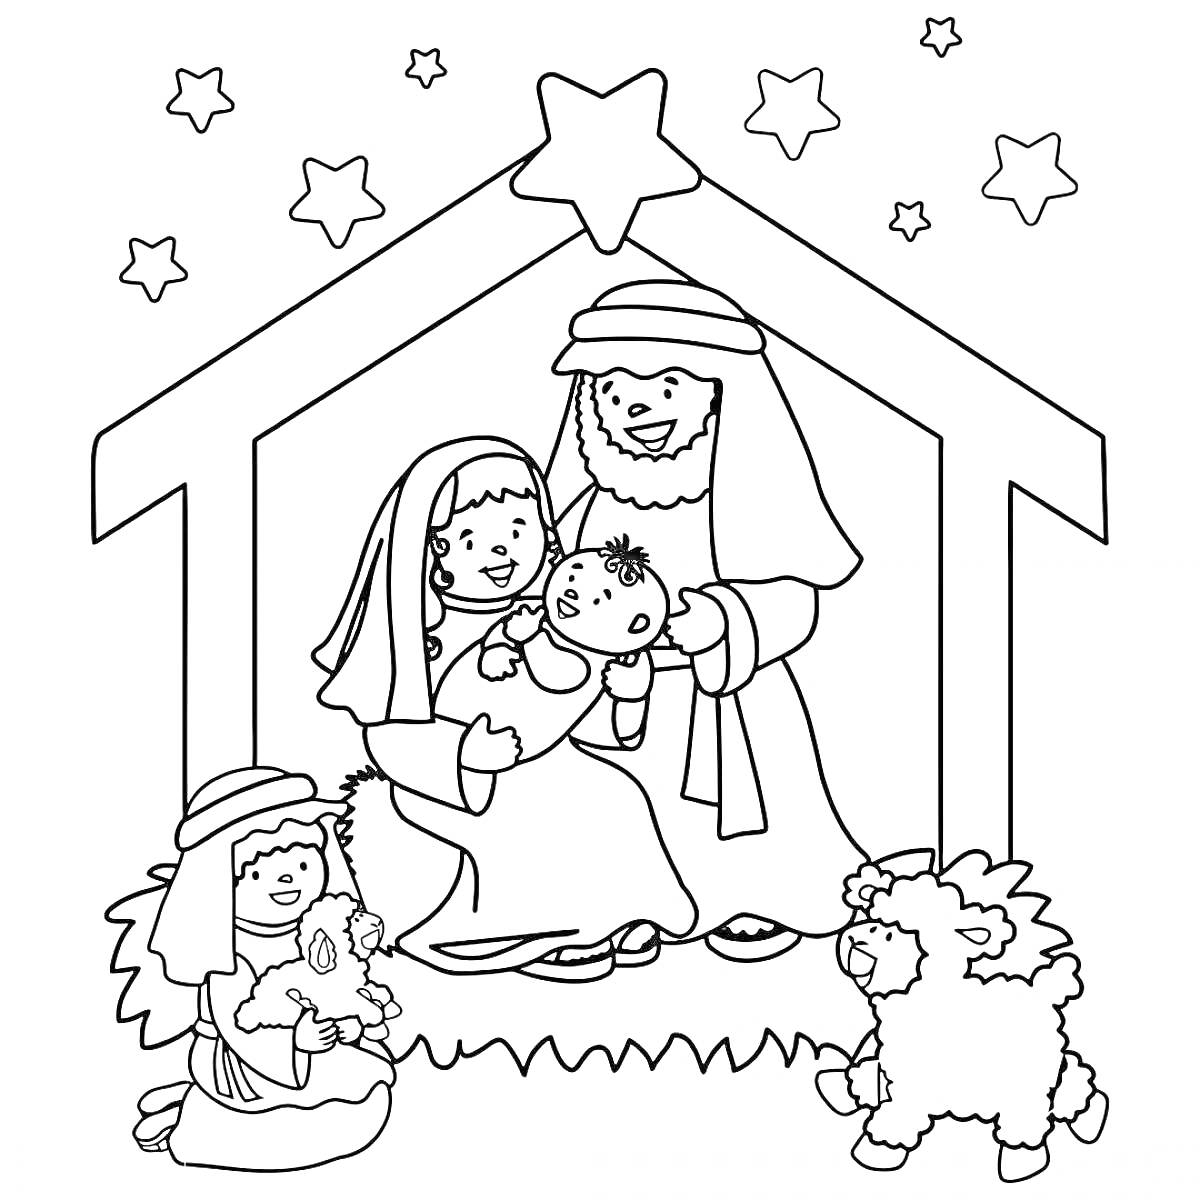 Рождественская сцена с младенцем Иисусом, Марией, Иосифом, ребенком с ягненком, овцами и звёздами